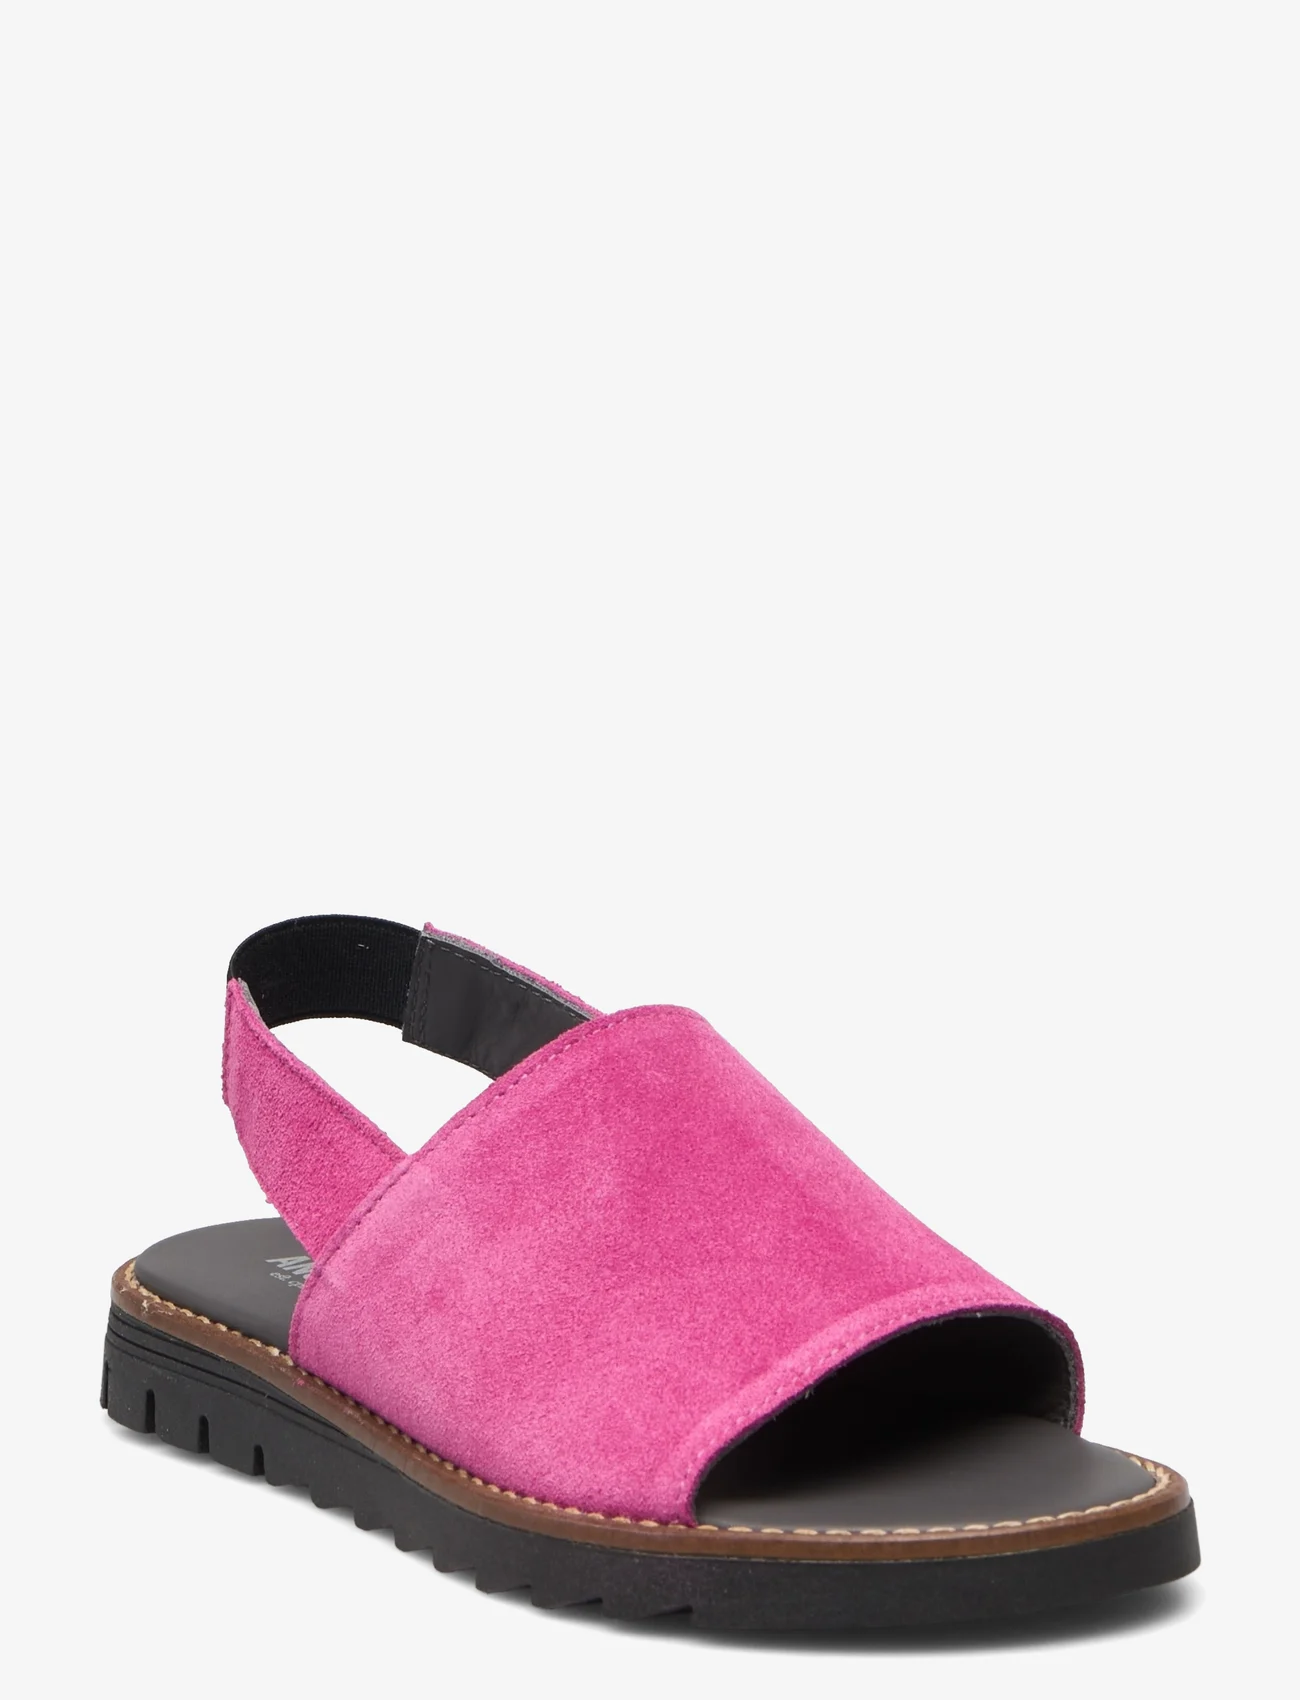 ANGULUS - Sandals - flat - open toe - op - sommerschnäppchen - 1150 pink - 0